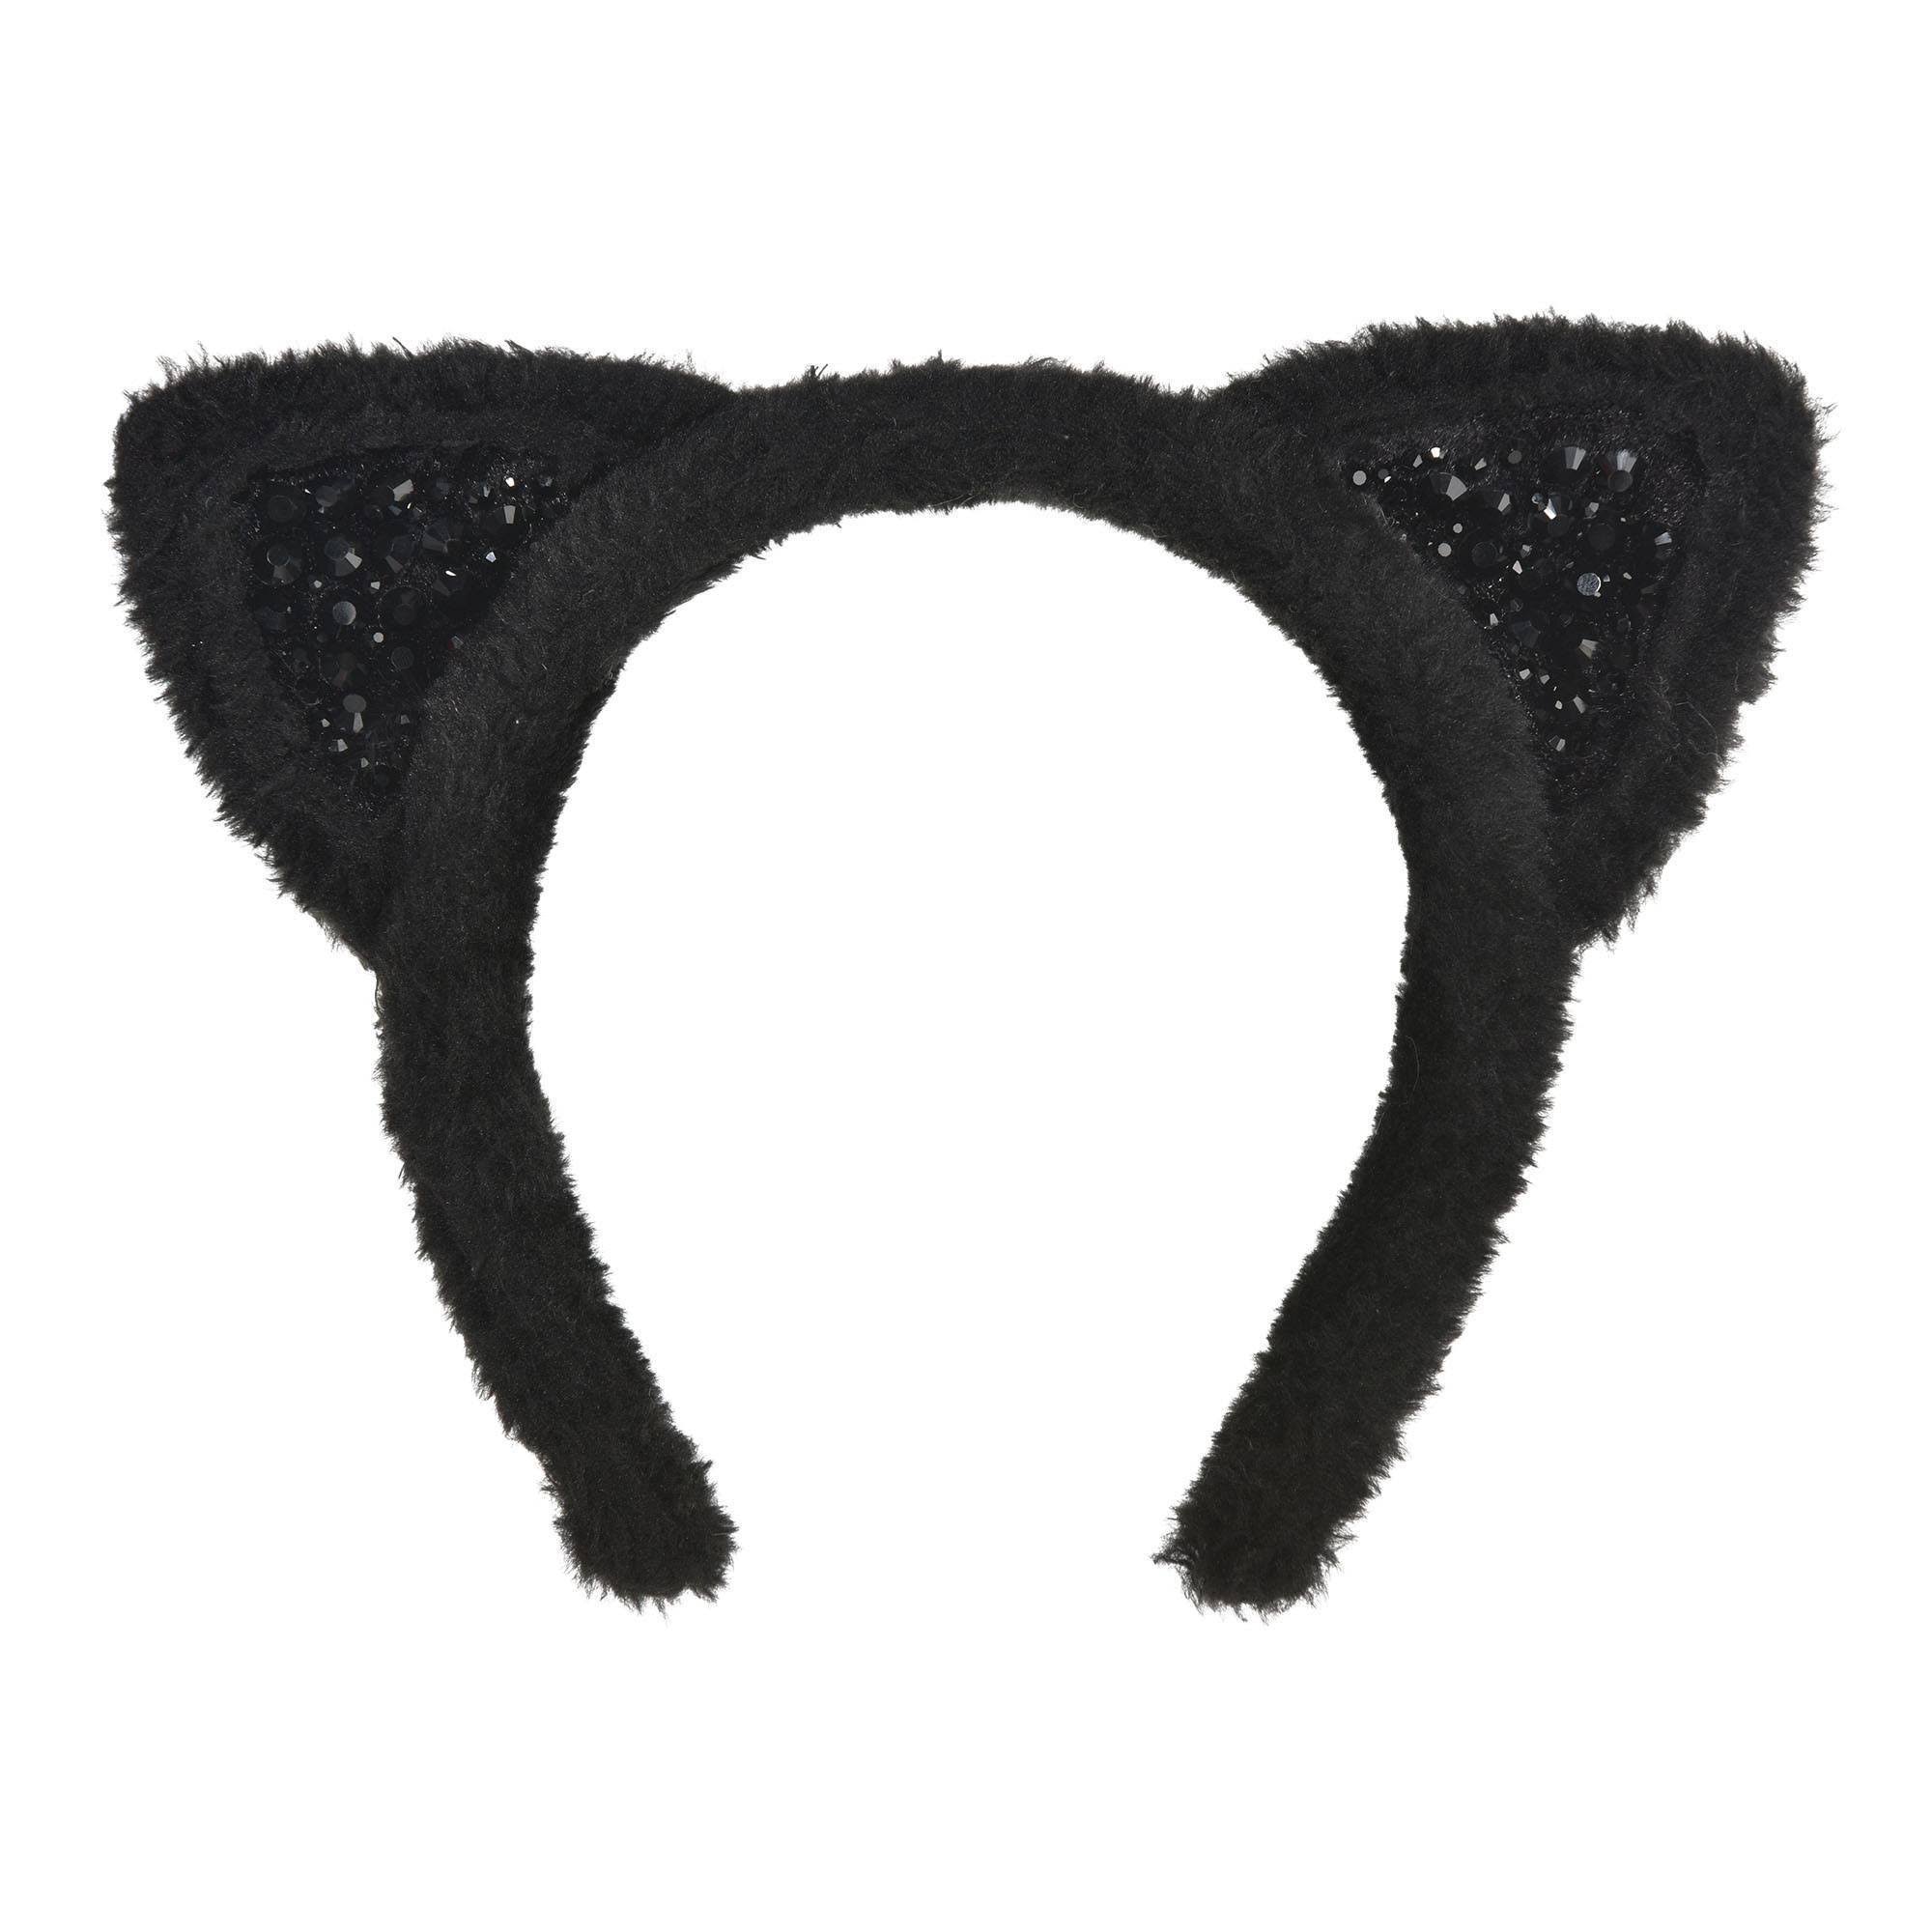 Posh Cat Ears Headband